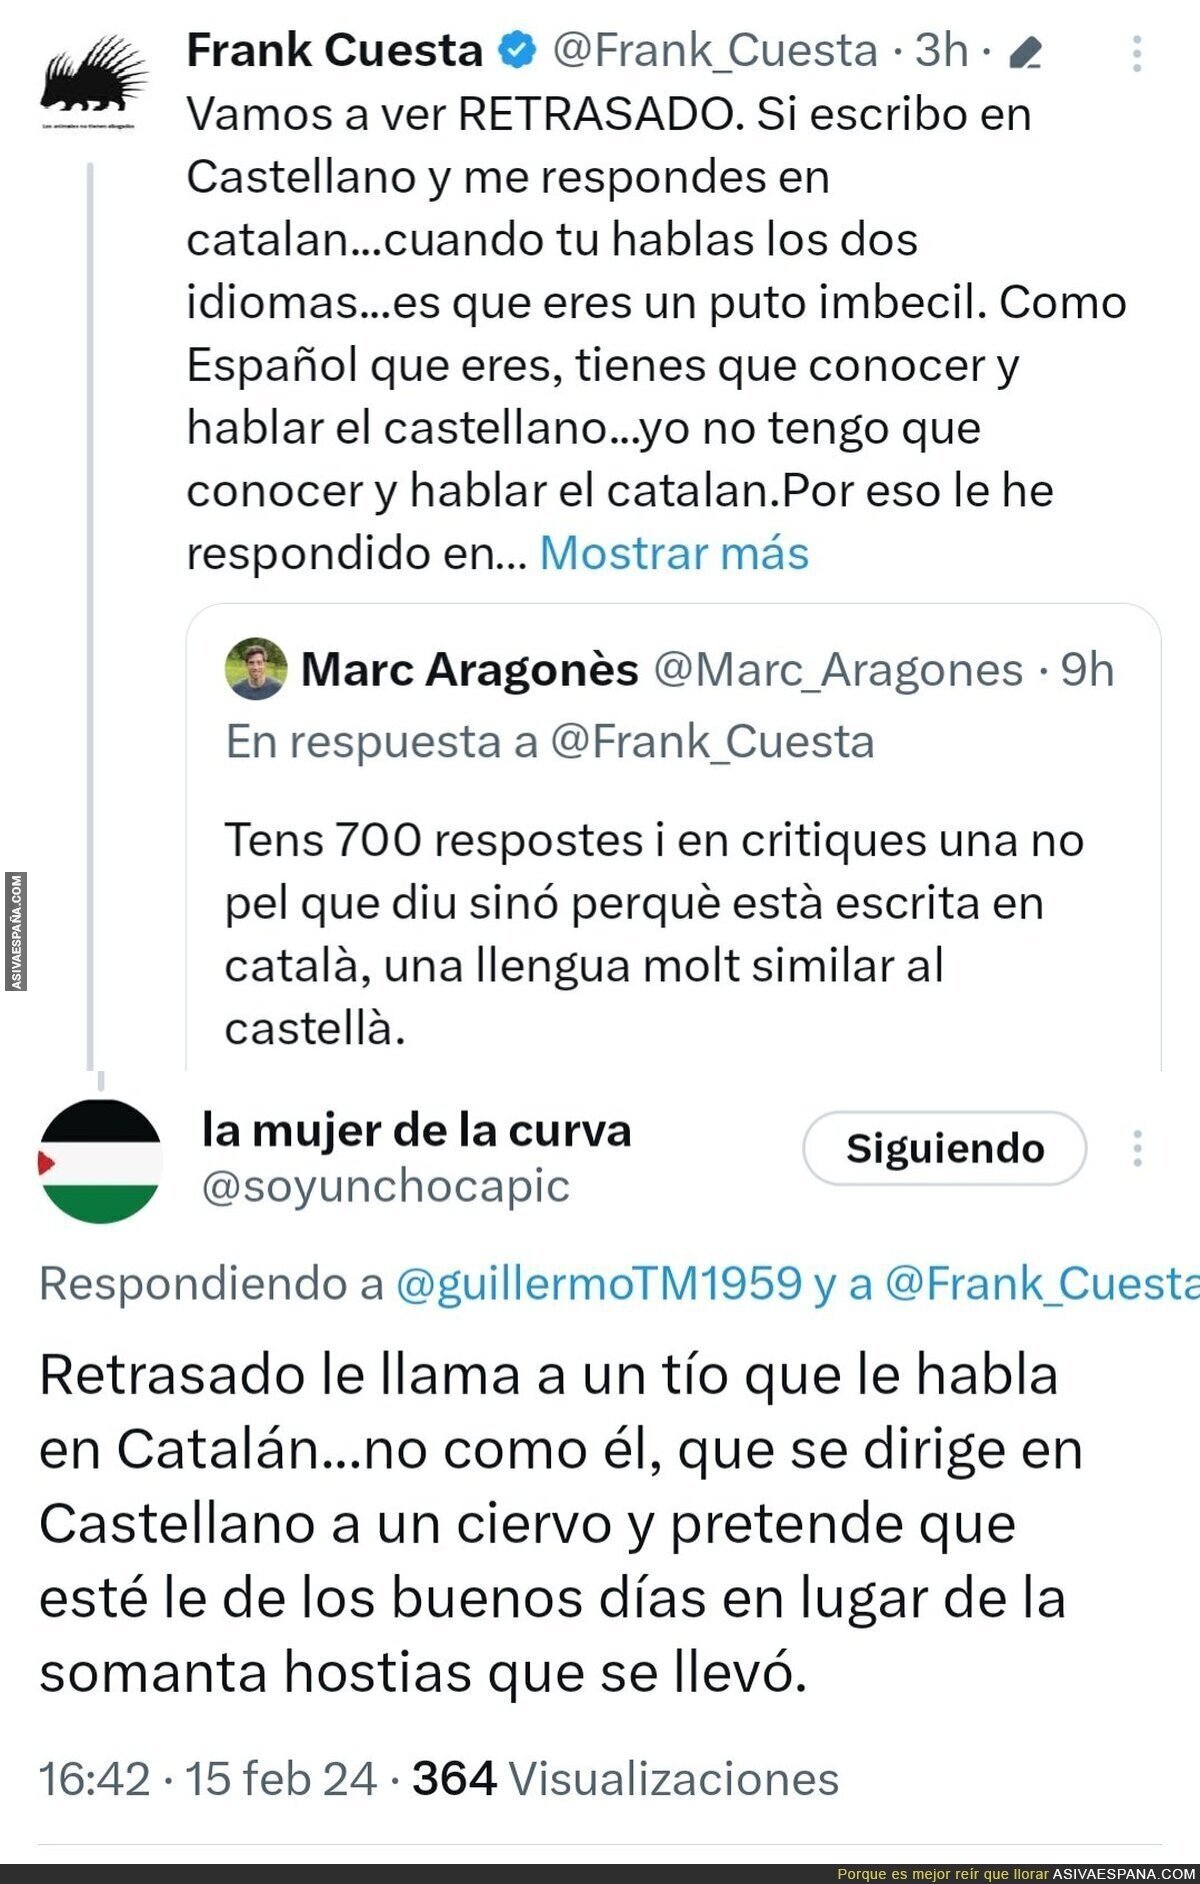 Gran respuesta a Frank Cuesta